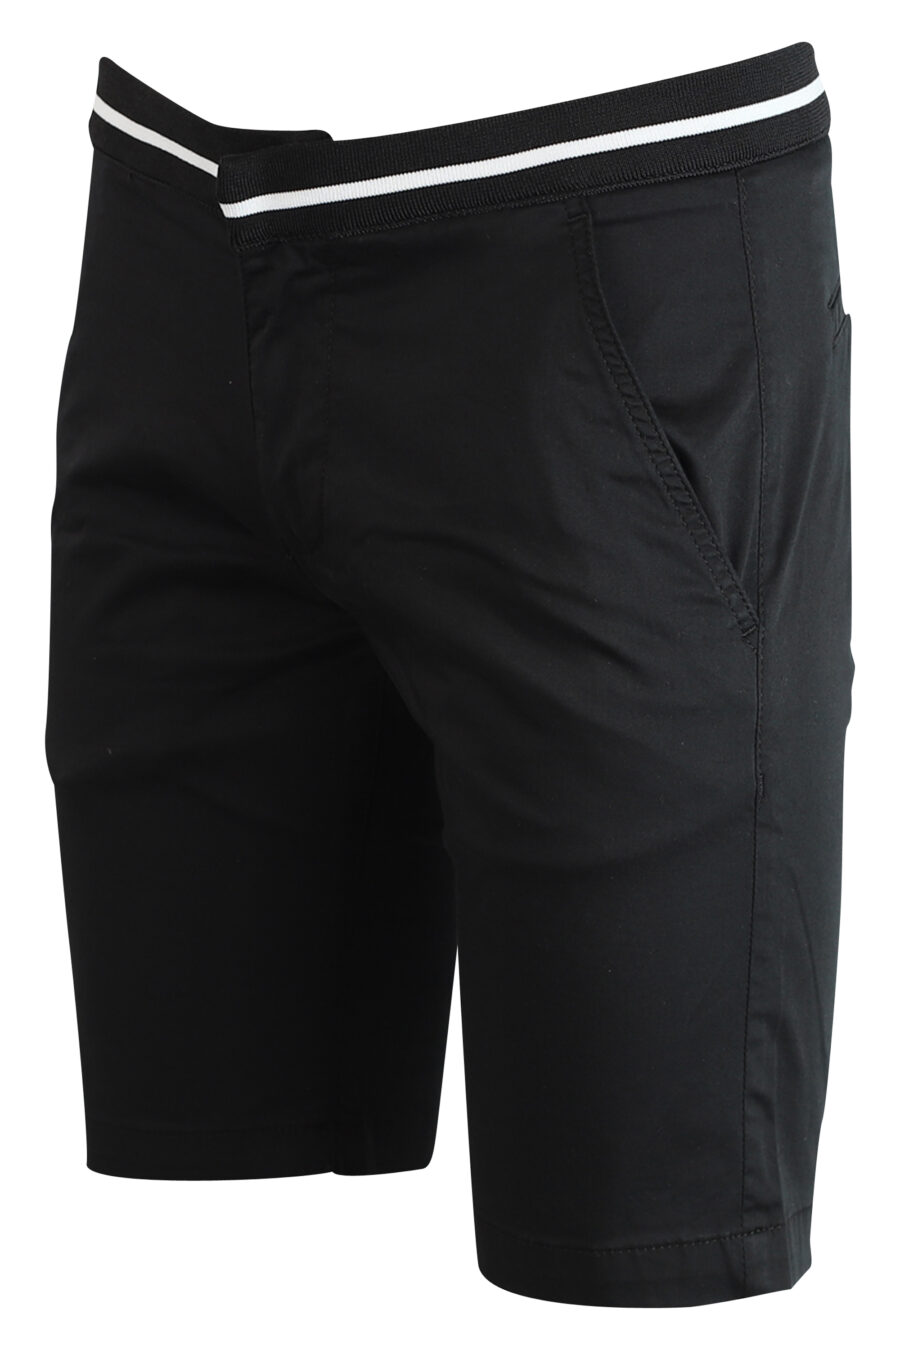 Schwarze Shorts mit weißen Details - 4062226164863 2